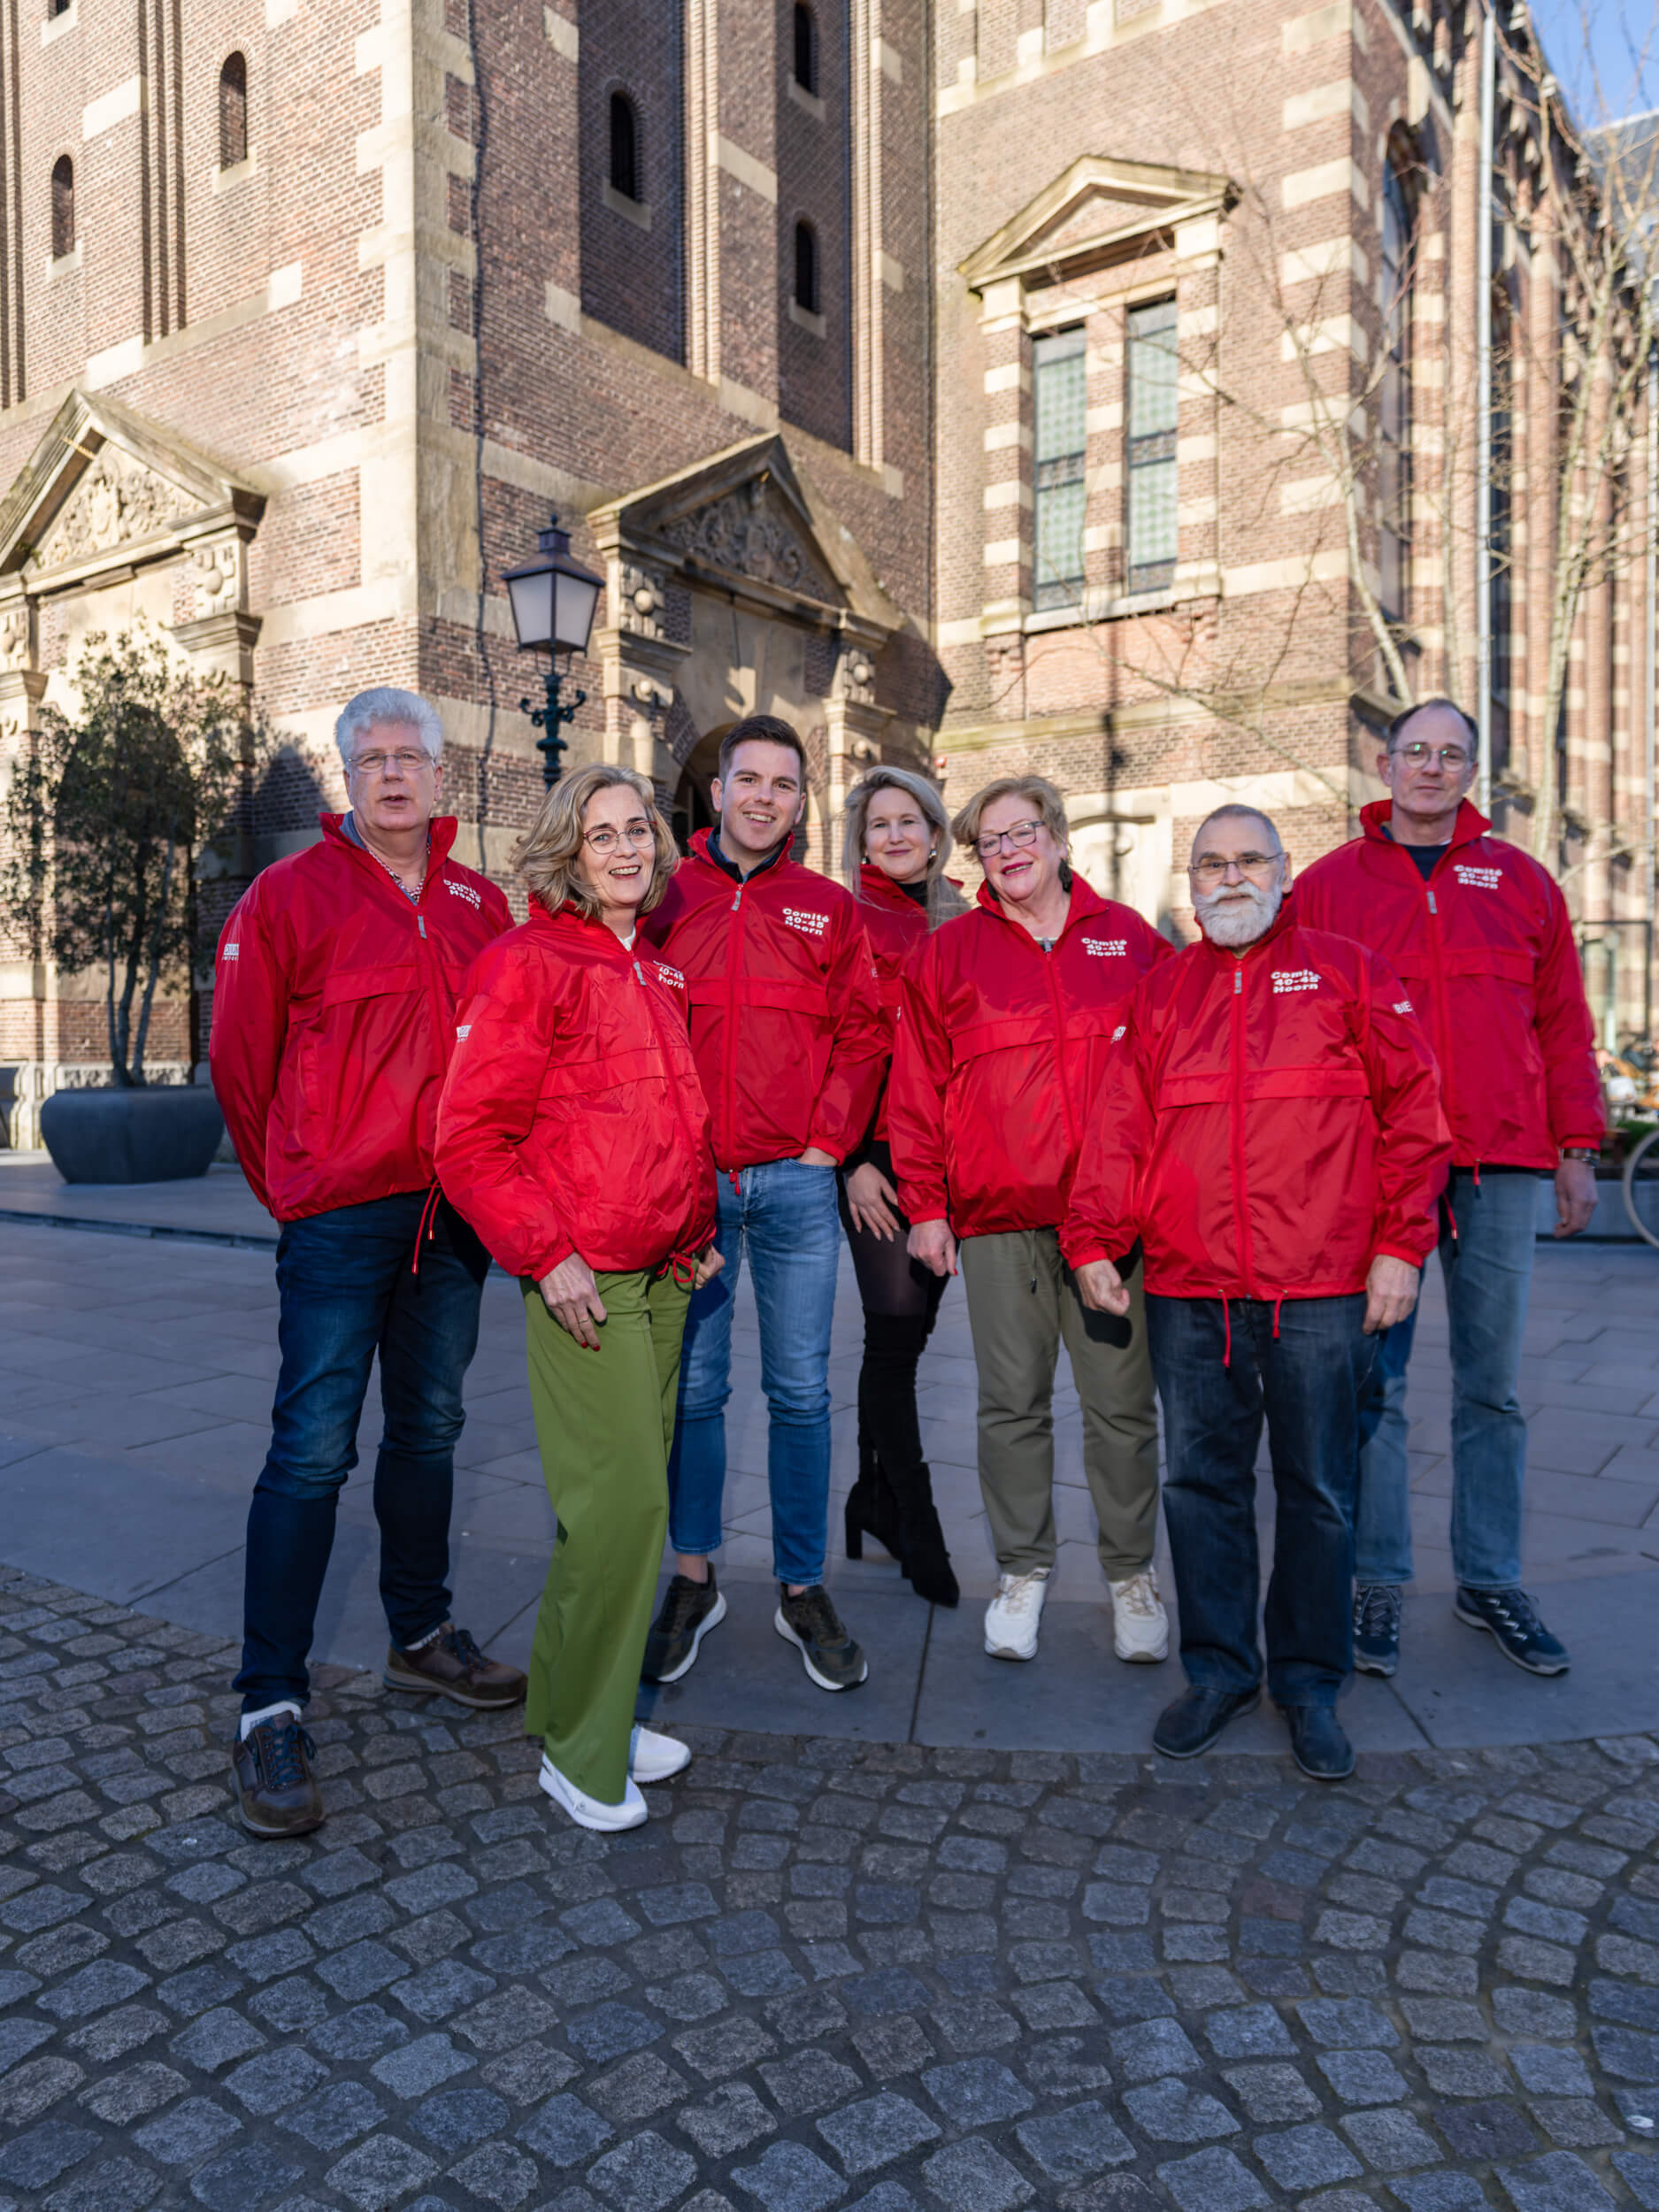 Het bestuur, van links naar rechts: Kees Hoogendijk, Sandra Boes, Alien Alberts, Phil van Dijk, Christa van Hees, Eddy Boom en Jos de Groot. Foto Benno Ellerbroek.